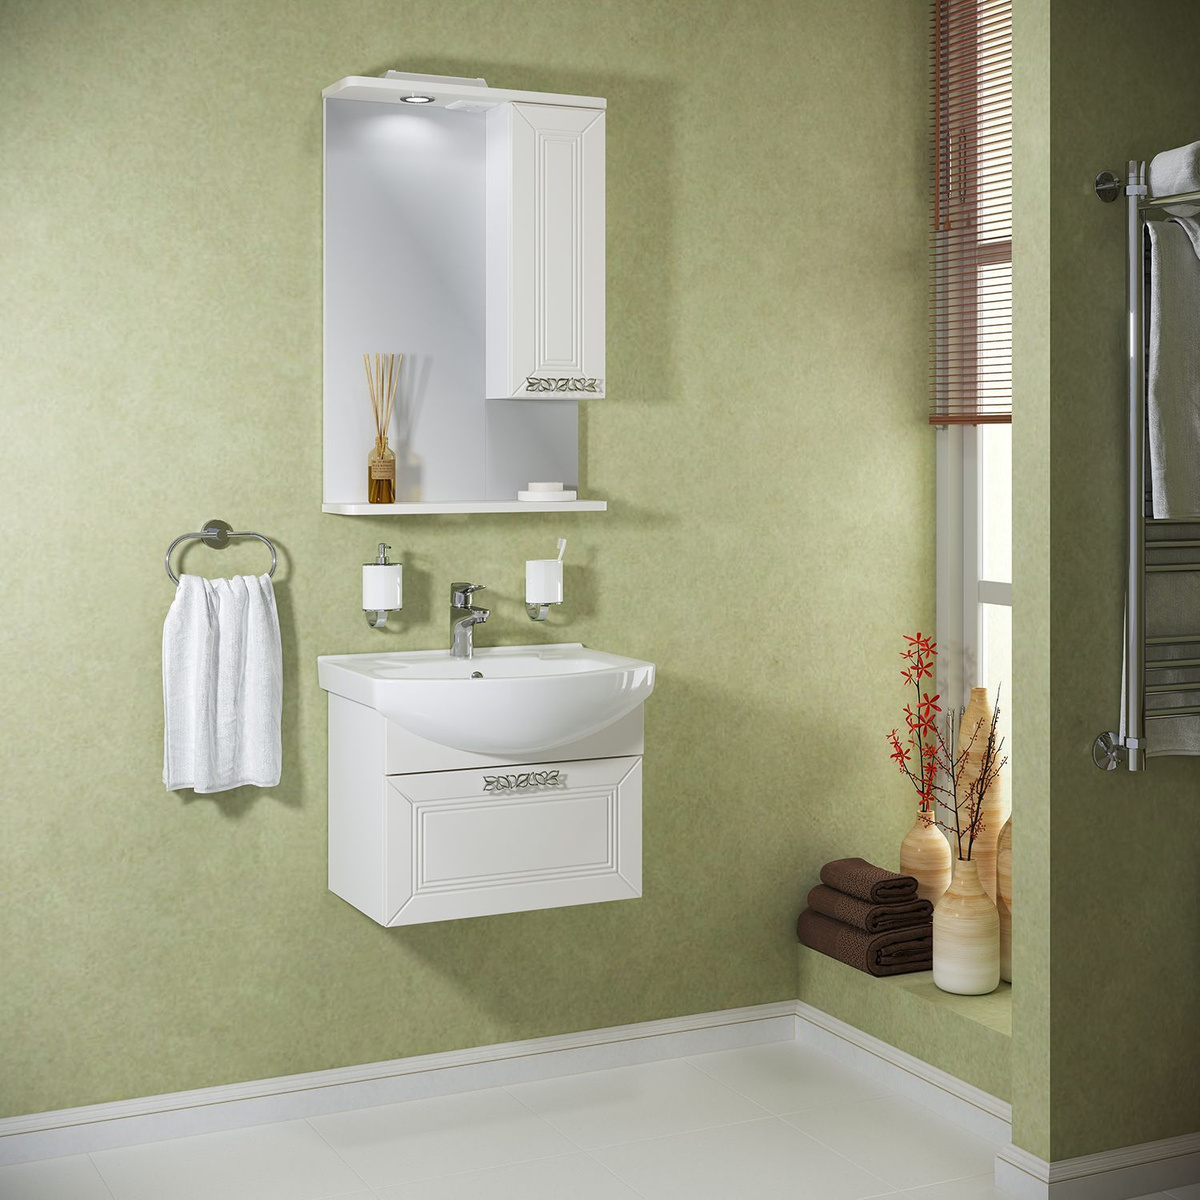 Мебель для ванной / Runo / Монро 55 подвесной / тумба с раковиной Элеганс 55 / шкаф для ванной / зеркало для ванной